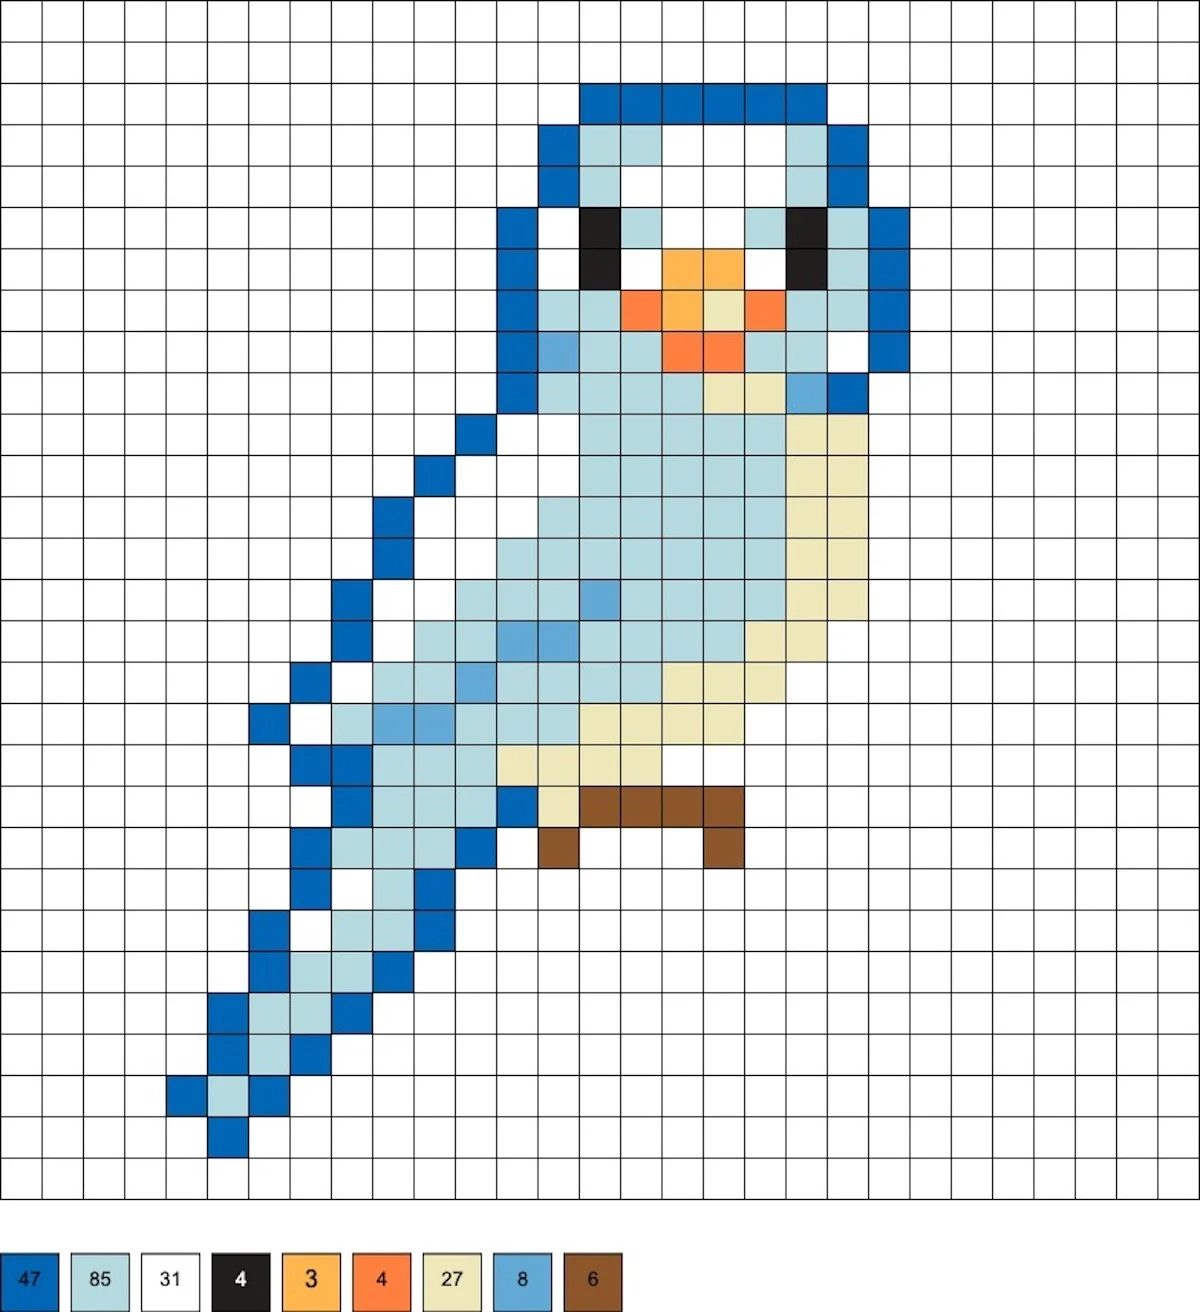 Bird Perler Beads (40+ Free Patterns!) - DIY Candy